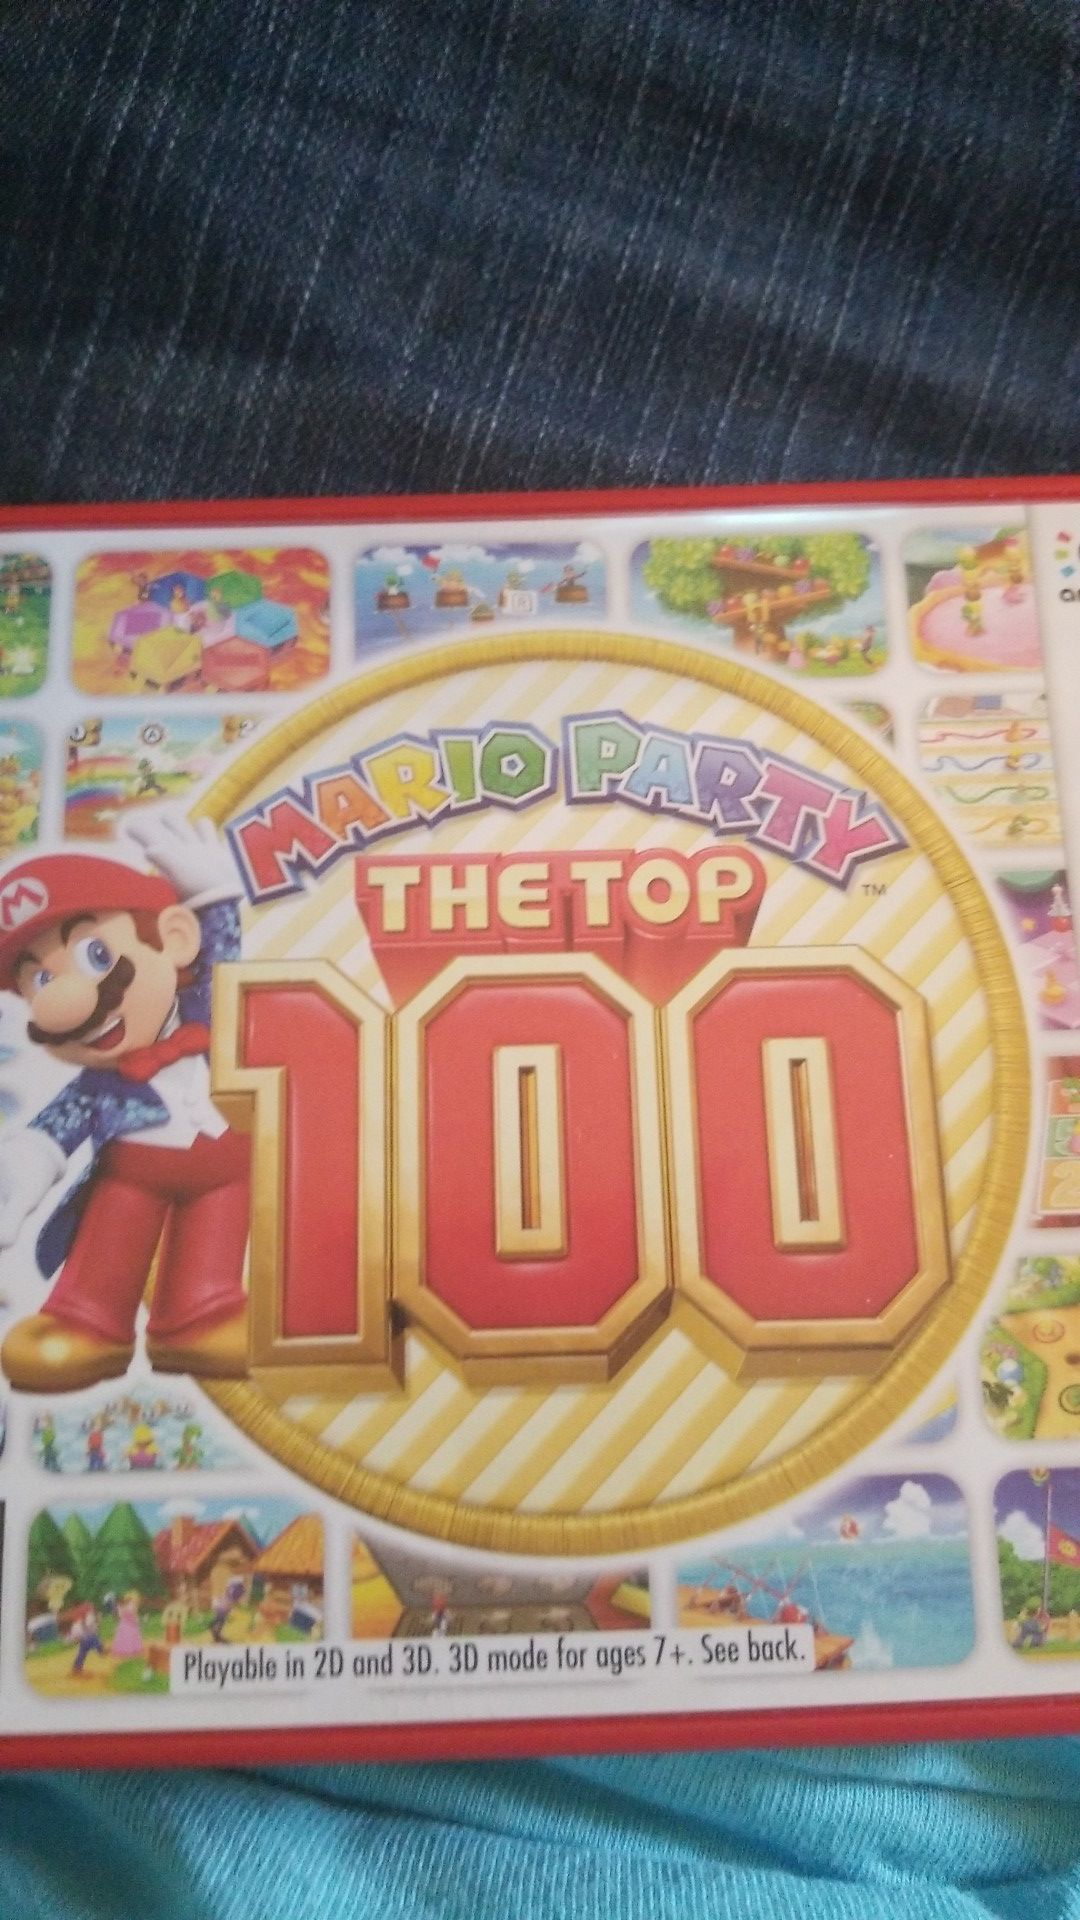 Nintendo 3ds Mario party